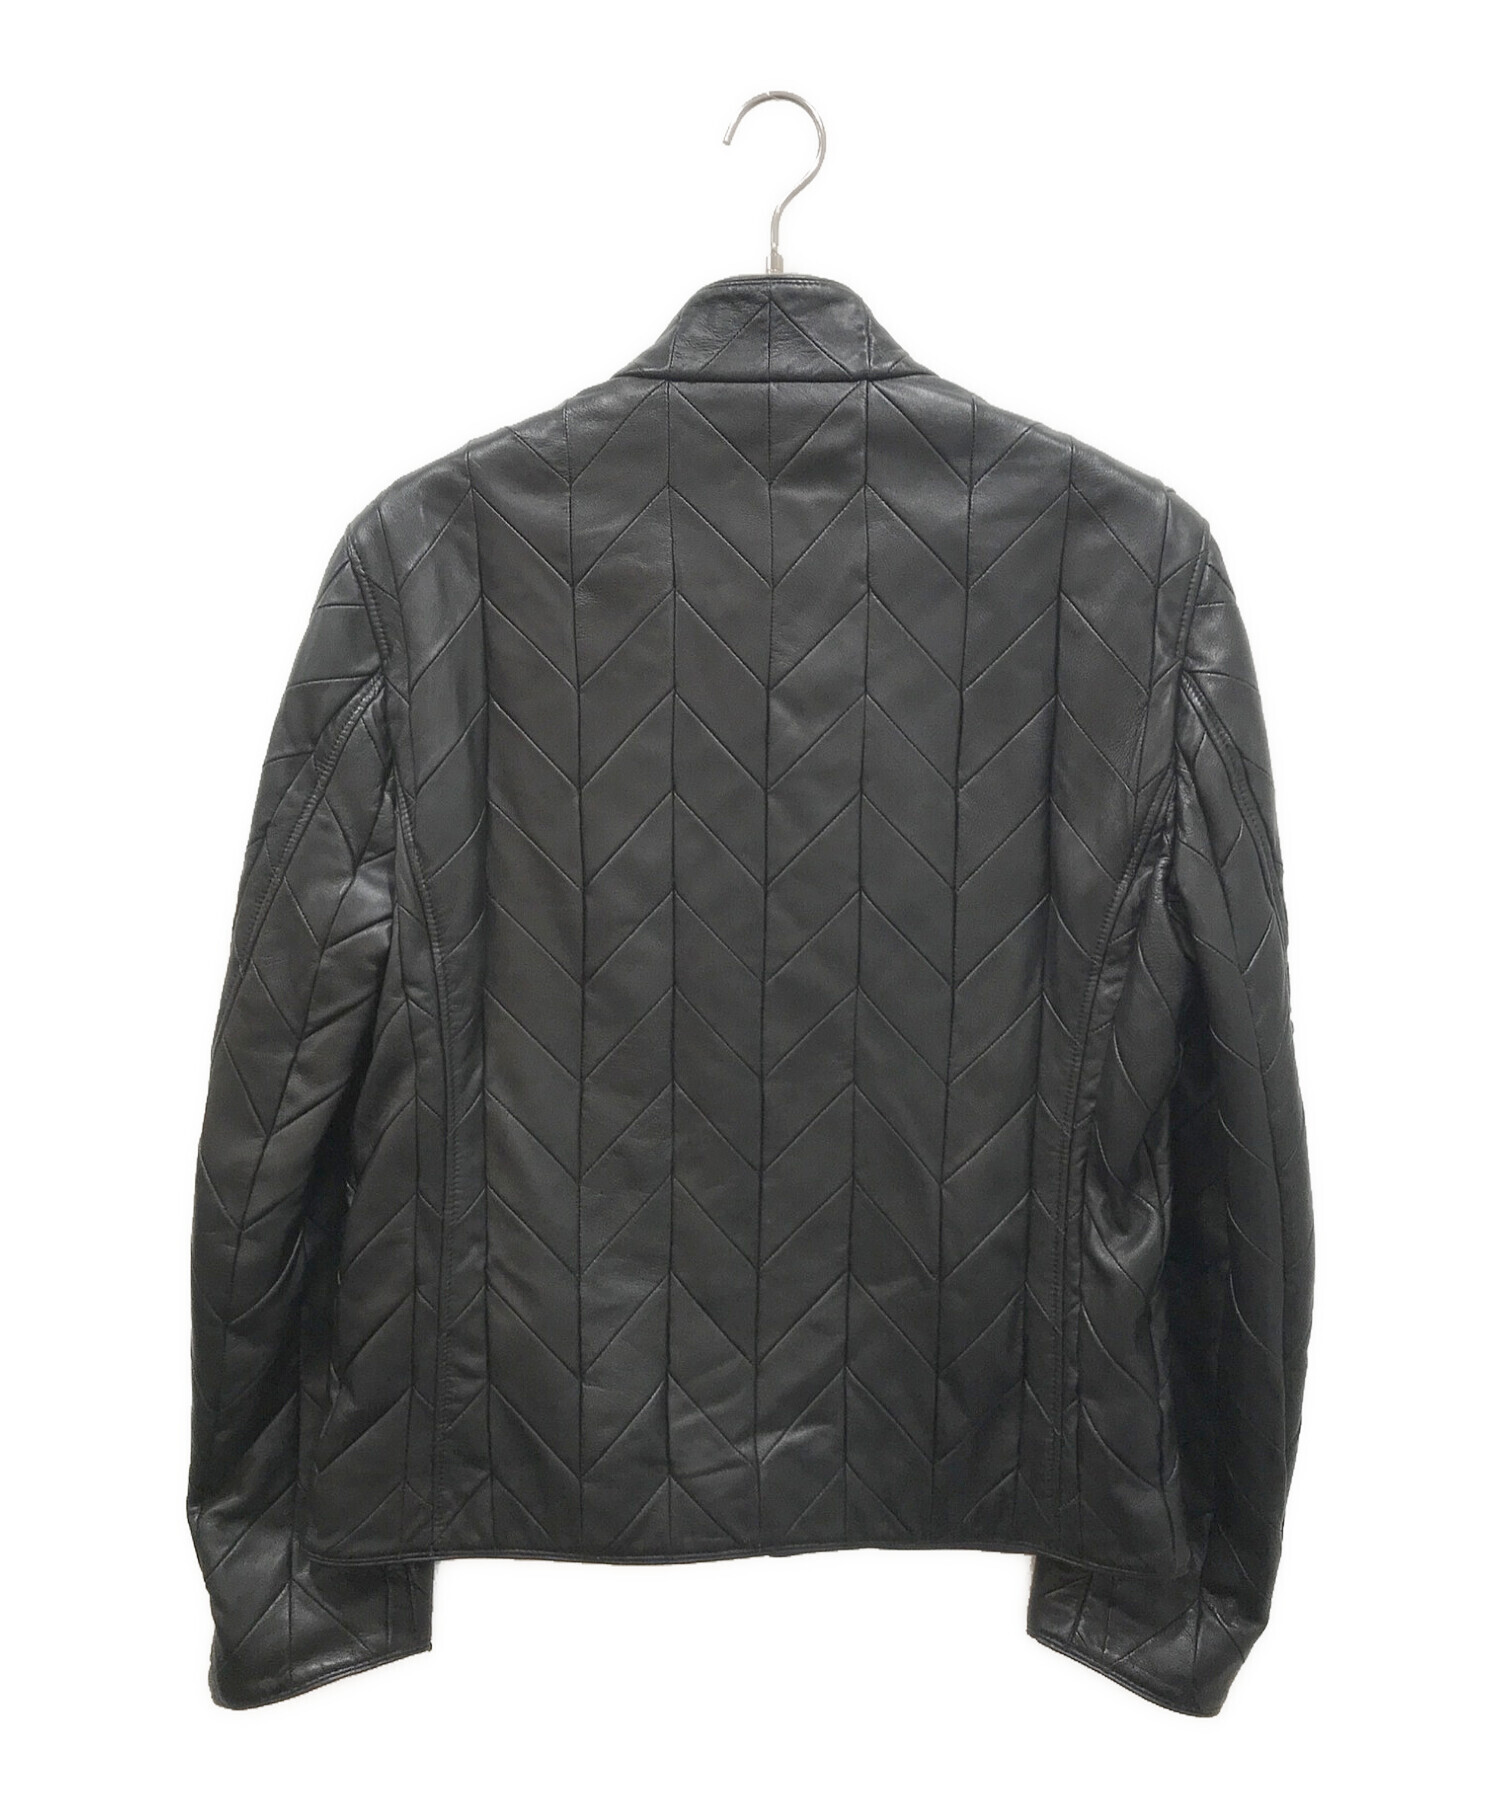 ARMANI COLLEZIONI (アルマーニ コレツィオーニ) ラムレザージャケット ブラック サイズ:50